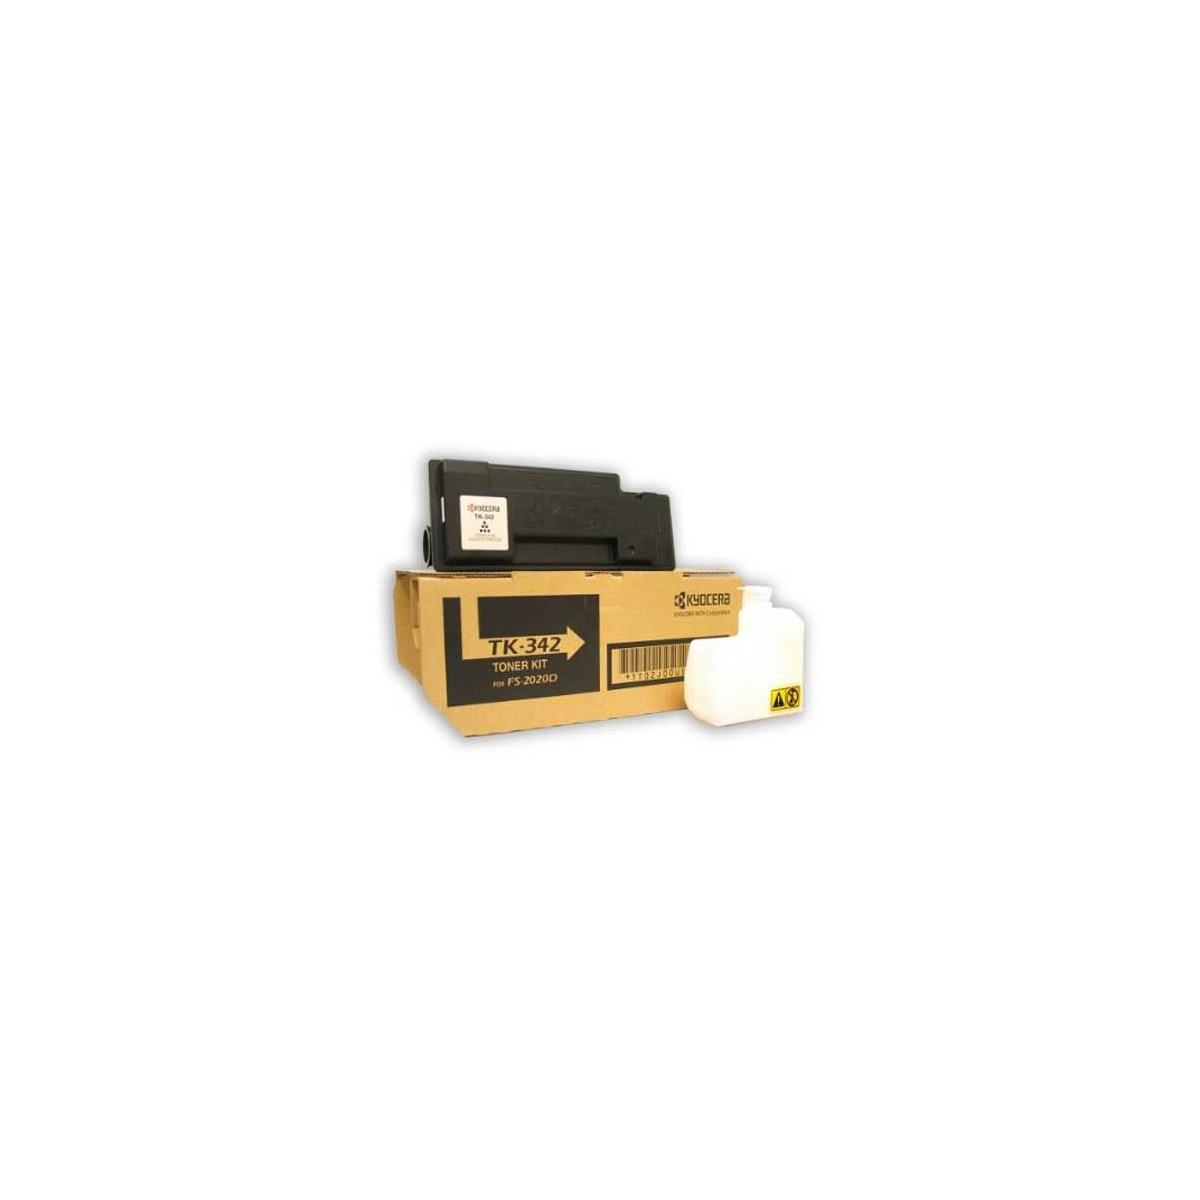 Image of Kyocera Mita TK-342 Black Laser Toner Cartridge